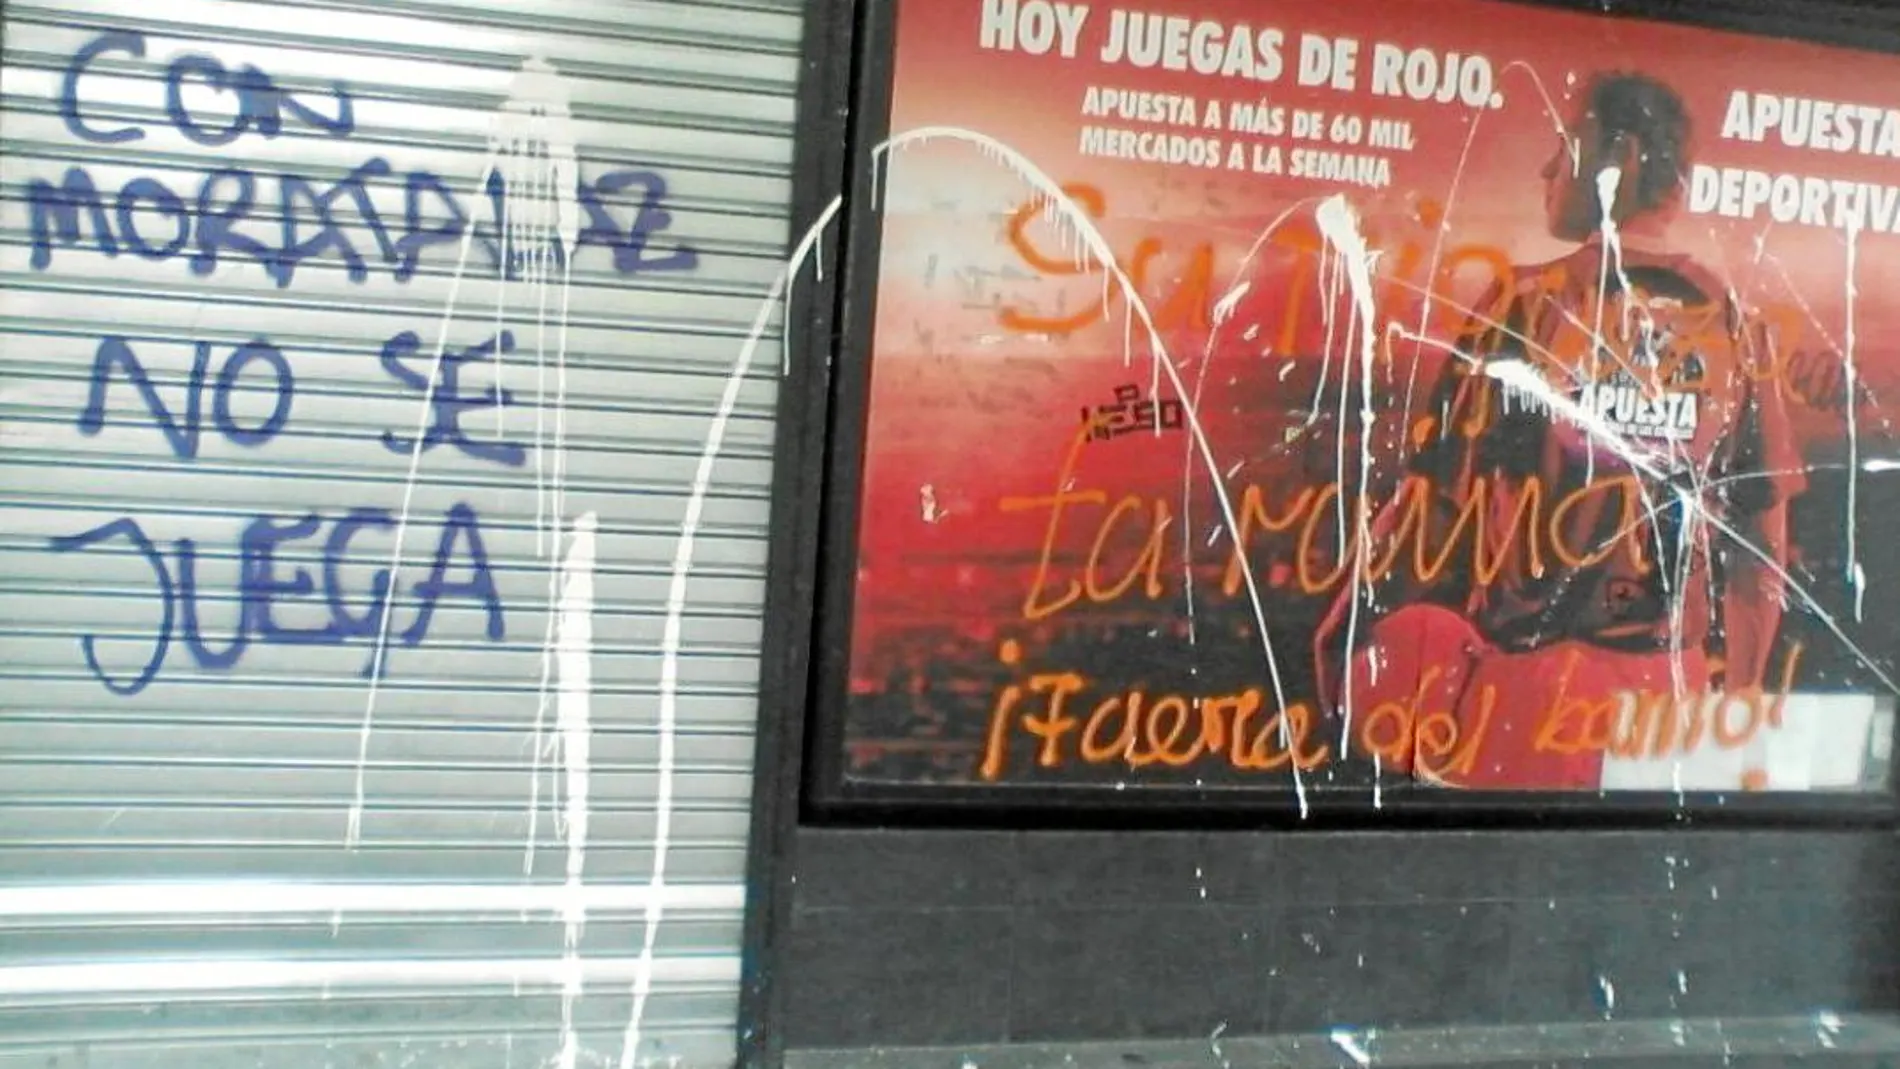 En Moratalaz, hace sólo unos meses, aparecieron varias pintadas rechazando la implantación de estos salones en su barrio. Fotografías de Ruben Mondelo